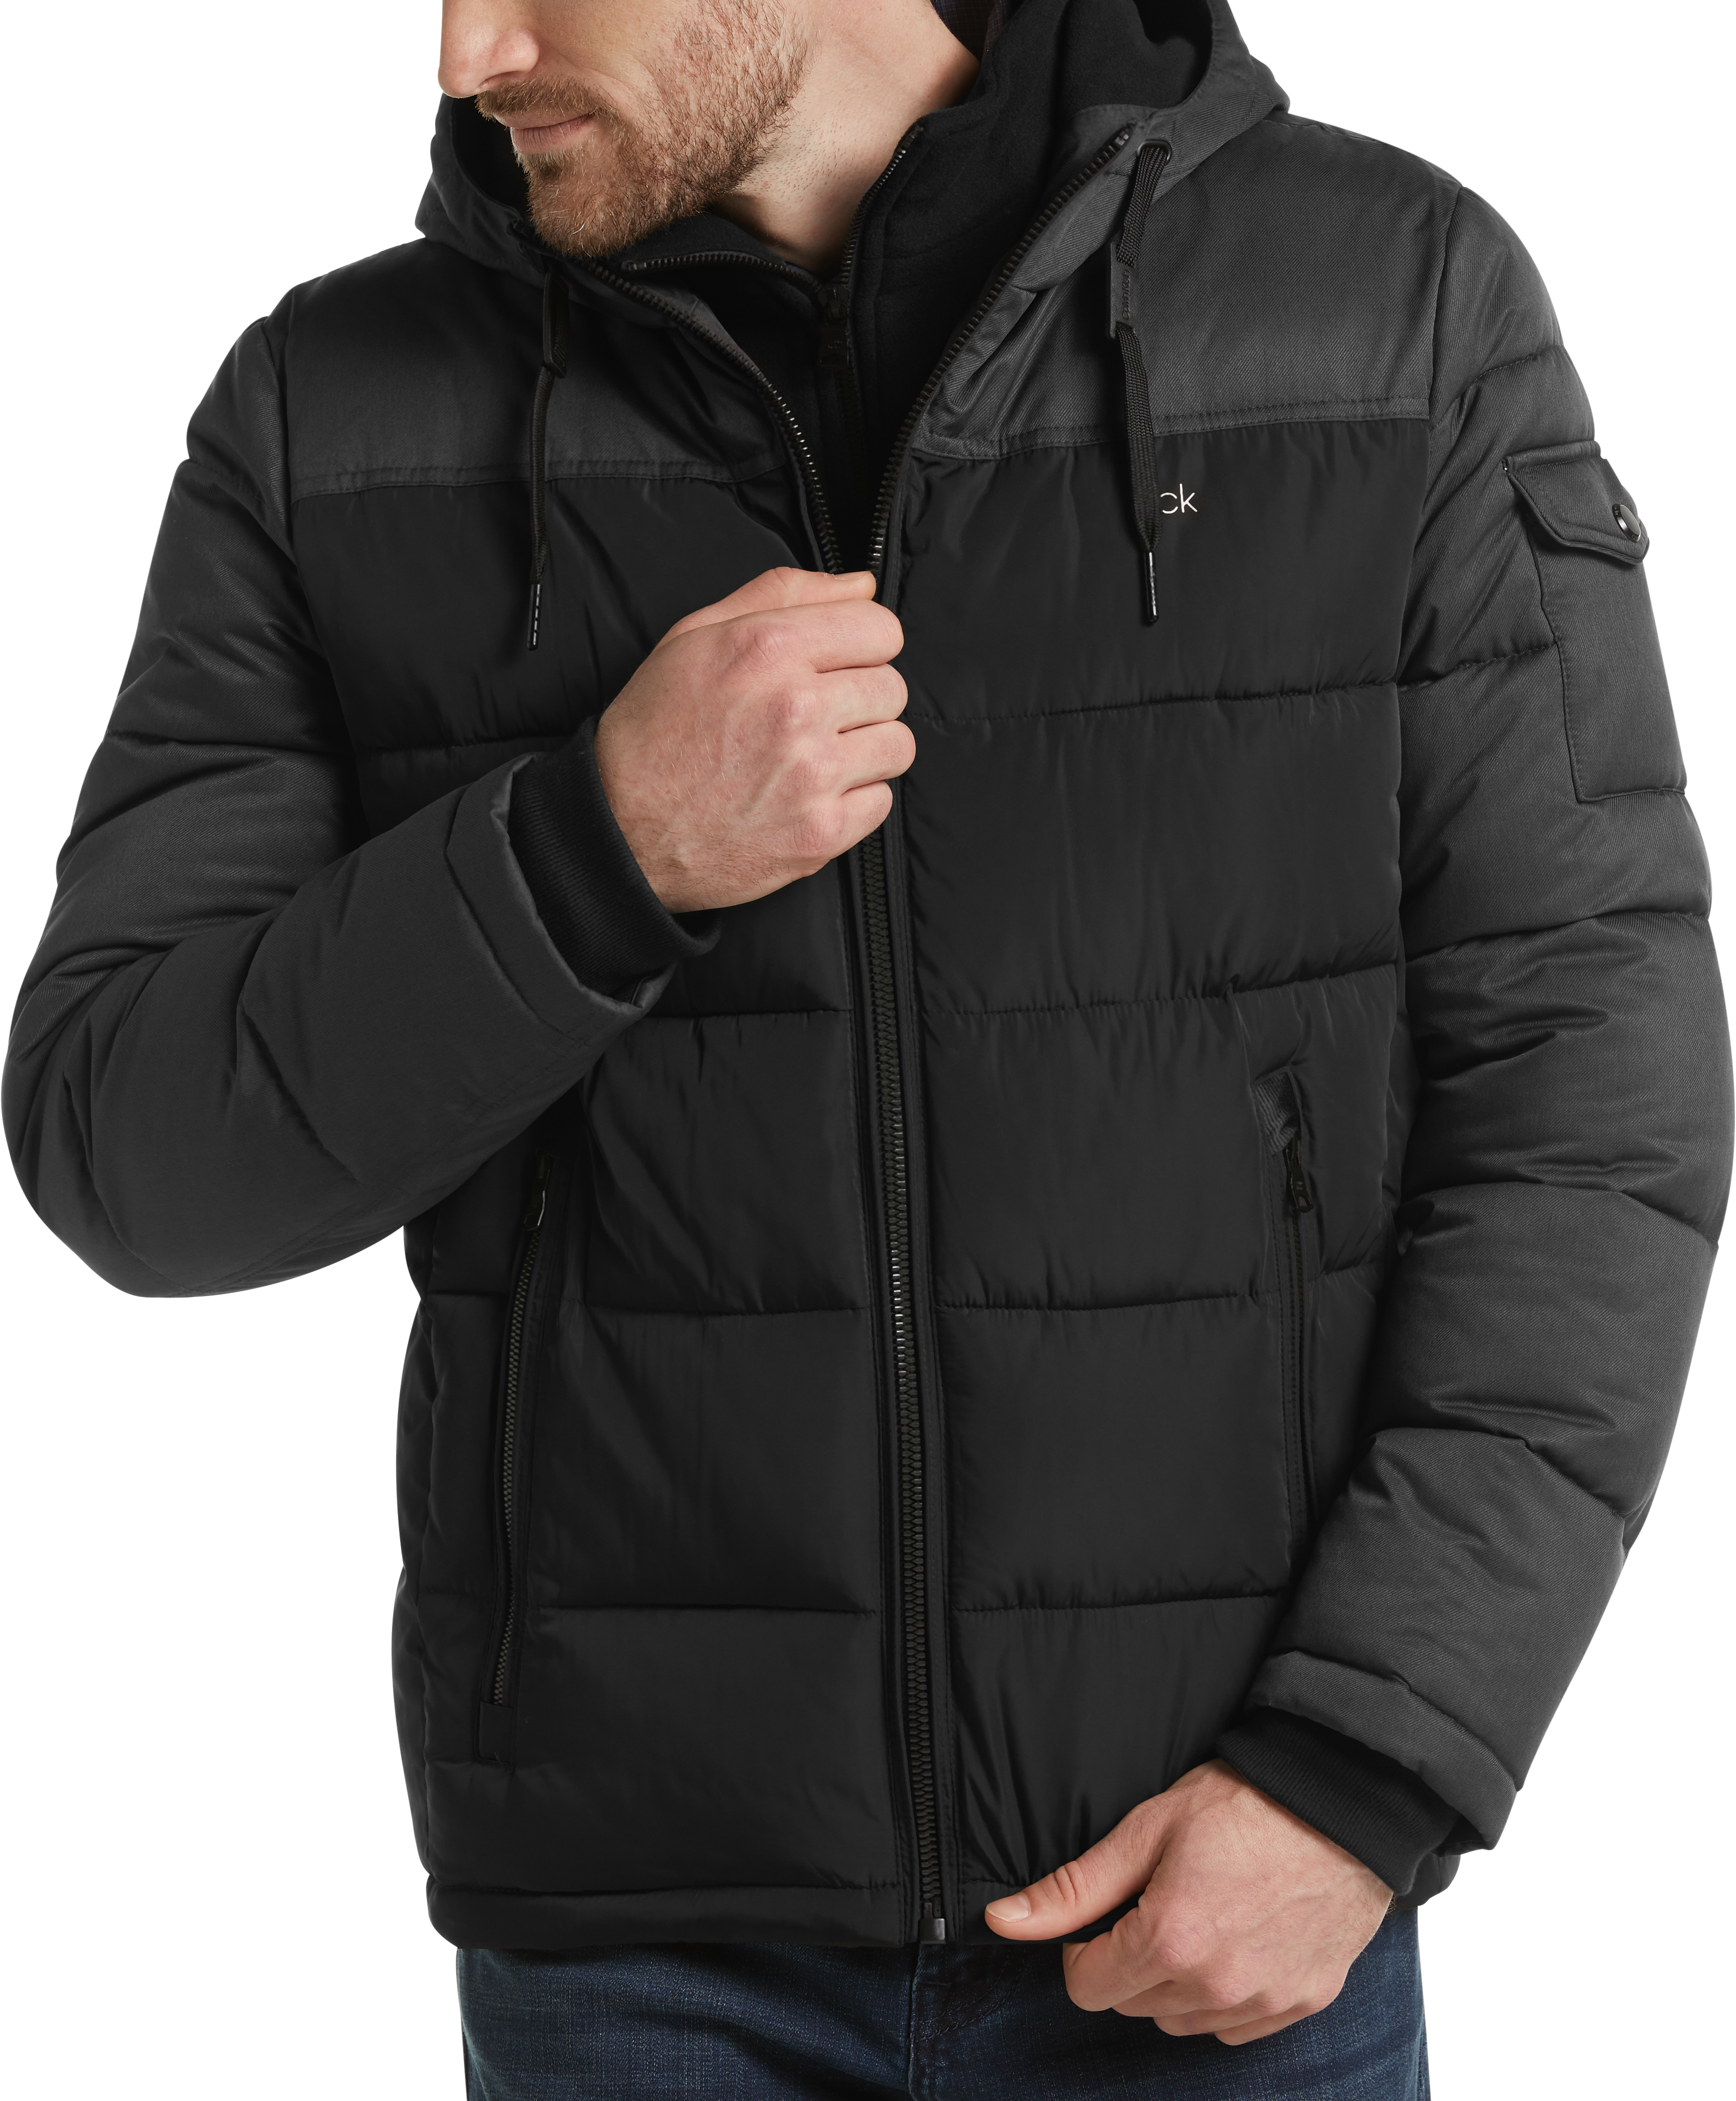 calvin klein black winter coat